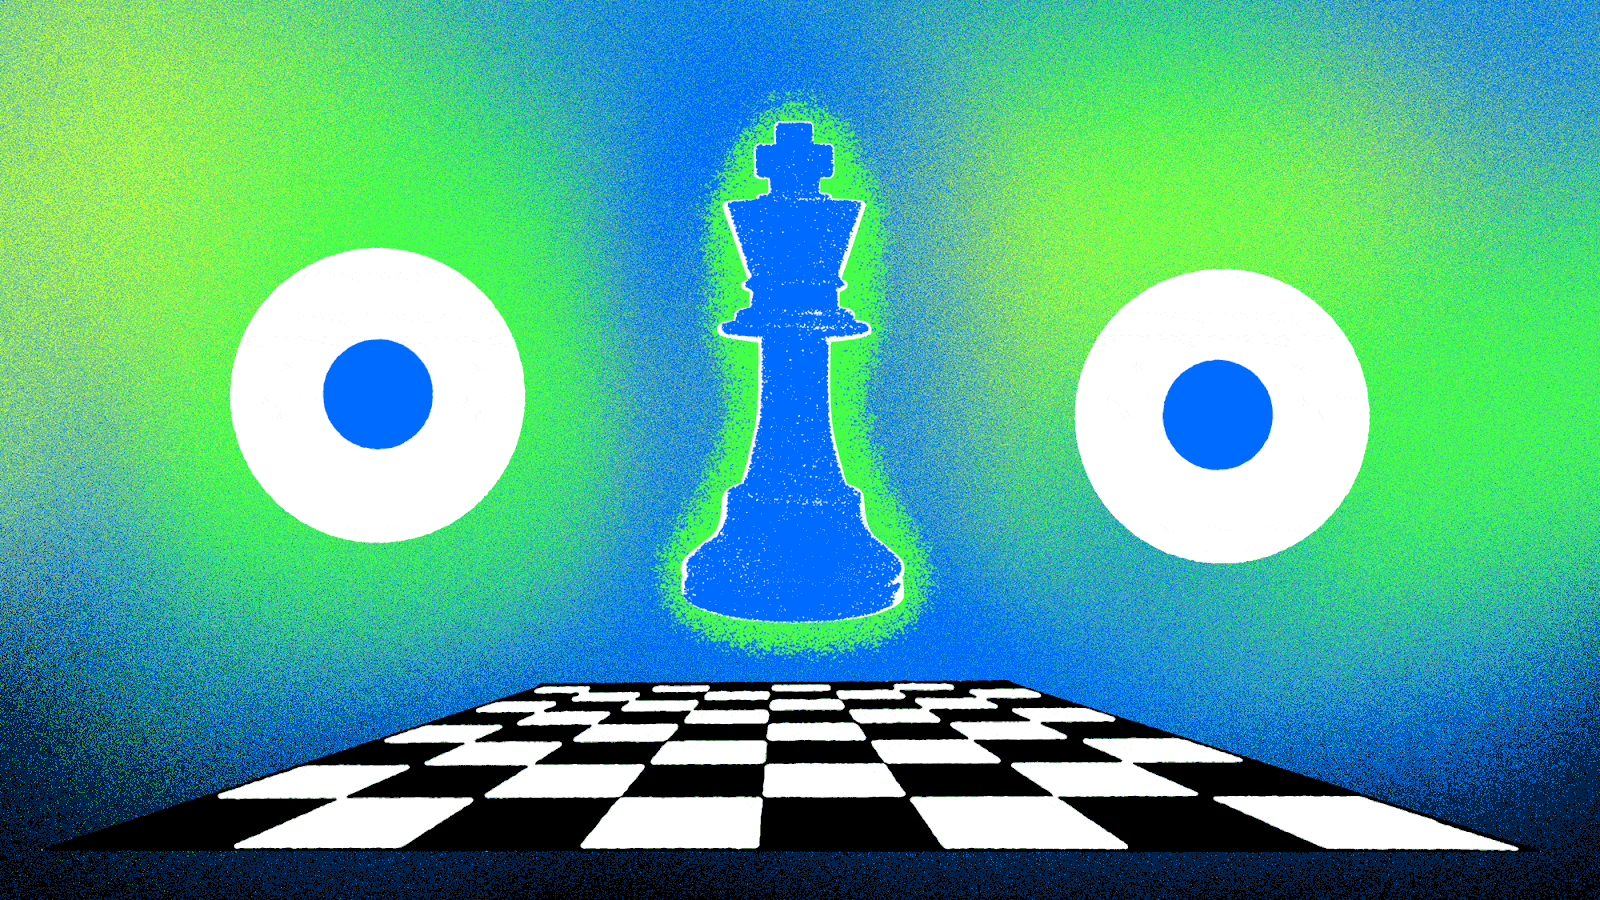 chess moves texting meme｜TikTok Search